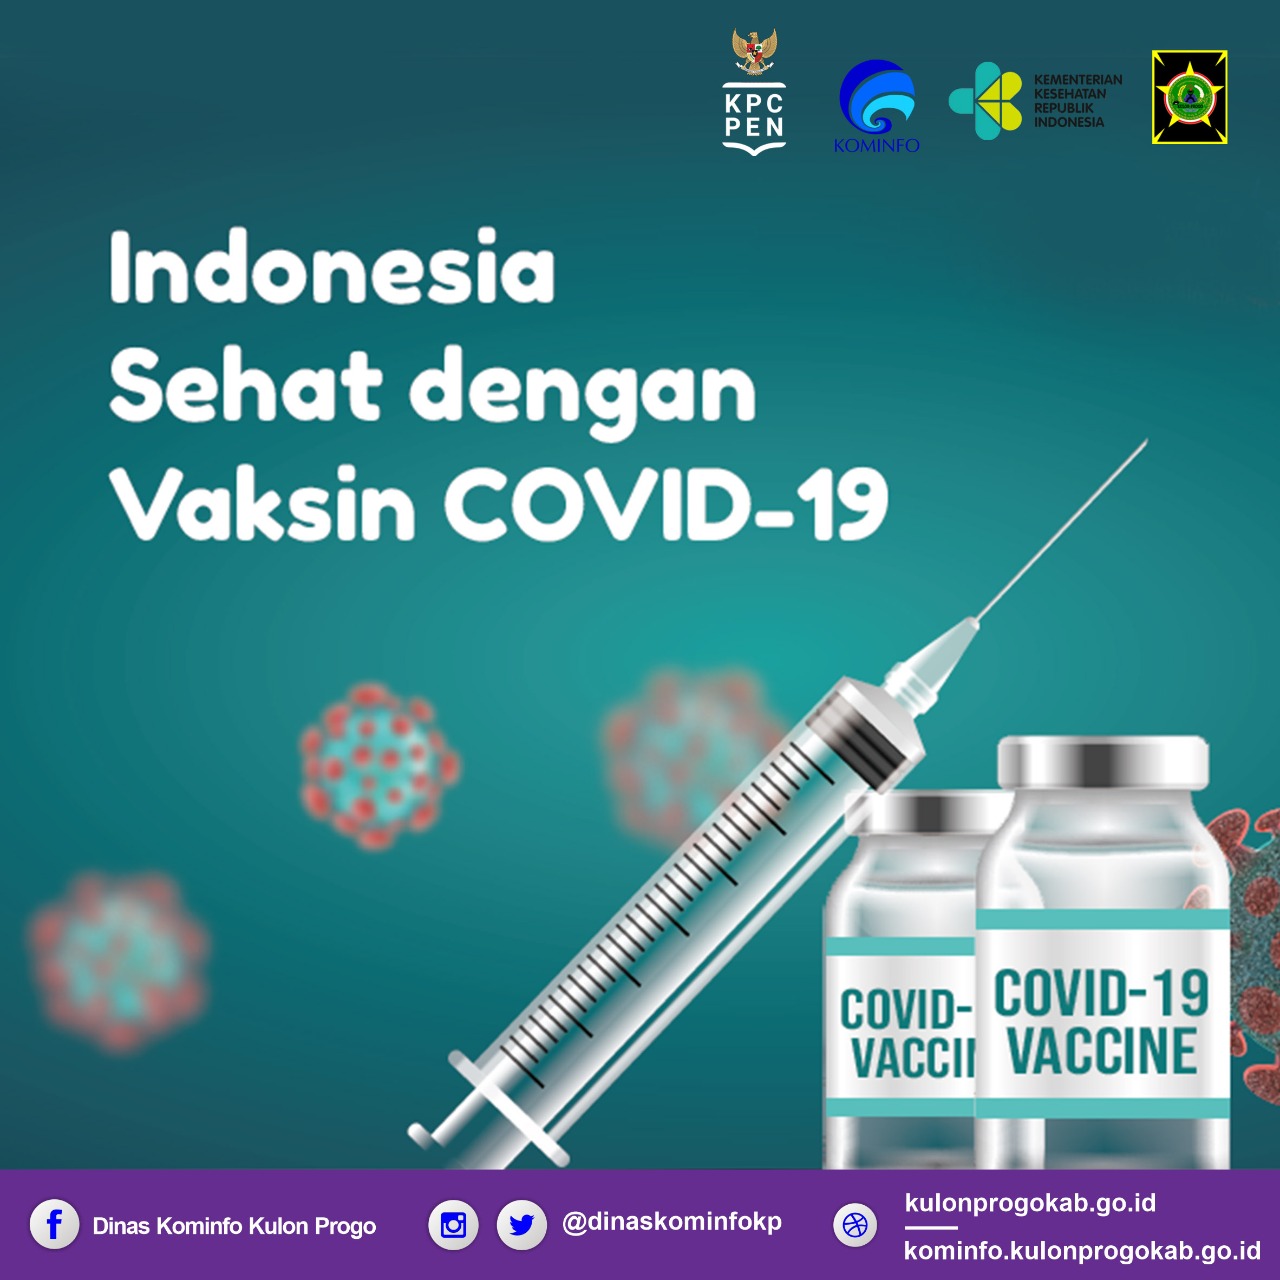 Covid-19 jenis vaksin 10 Vaksin